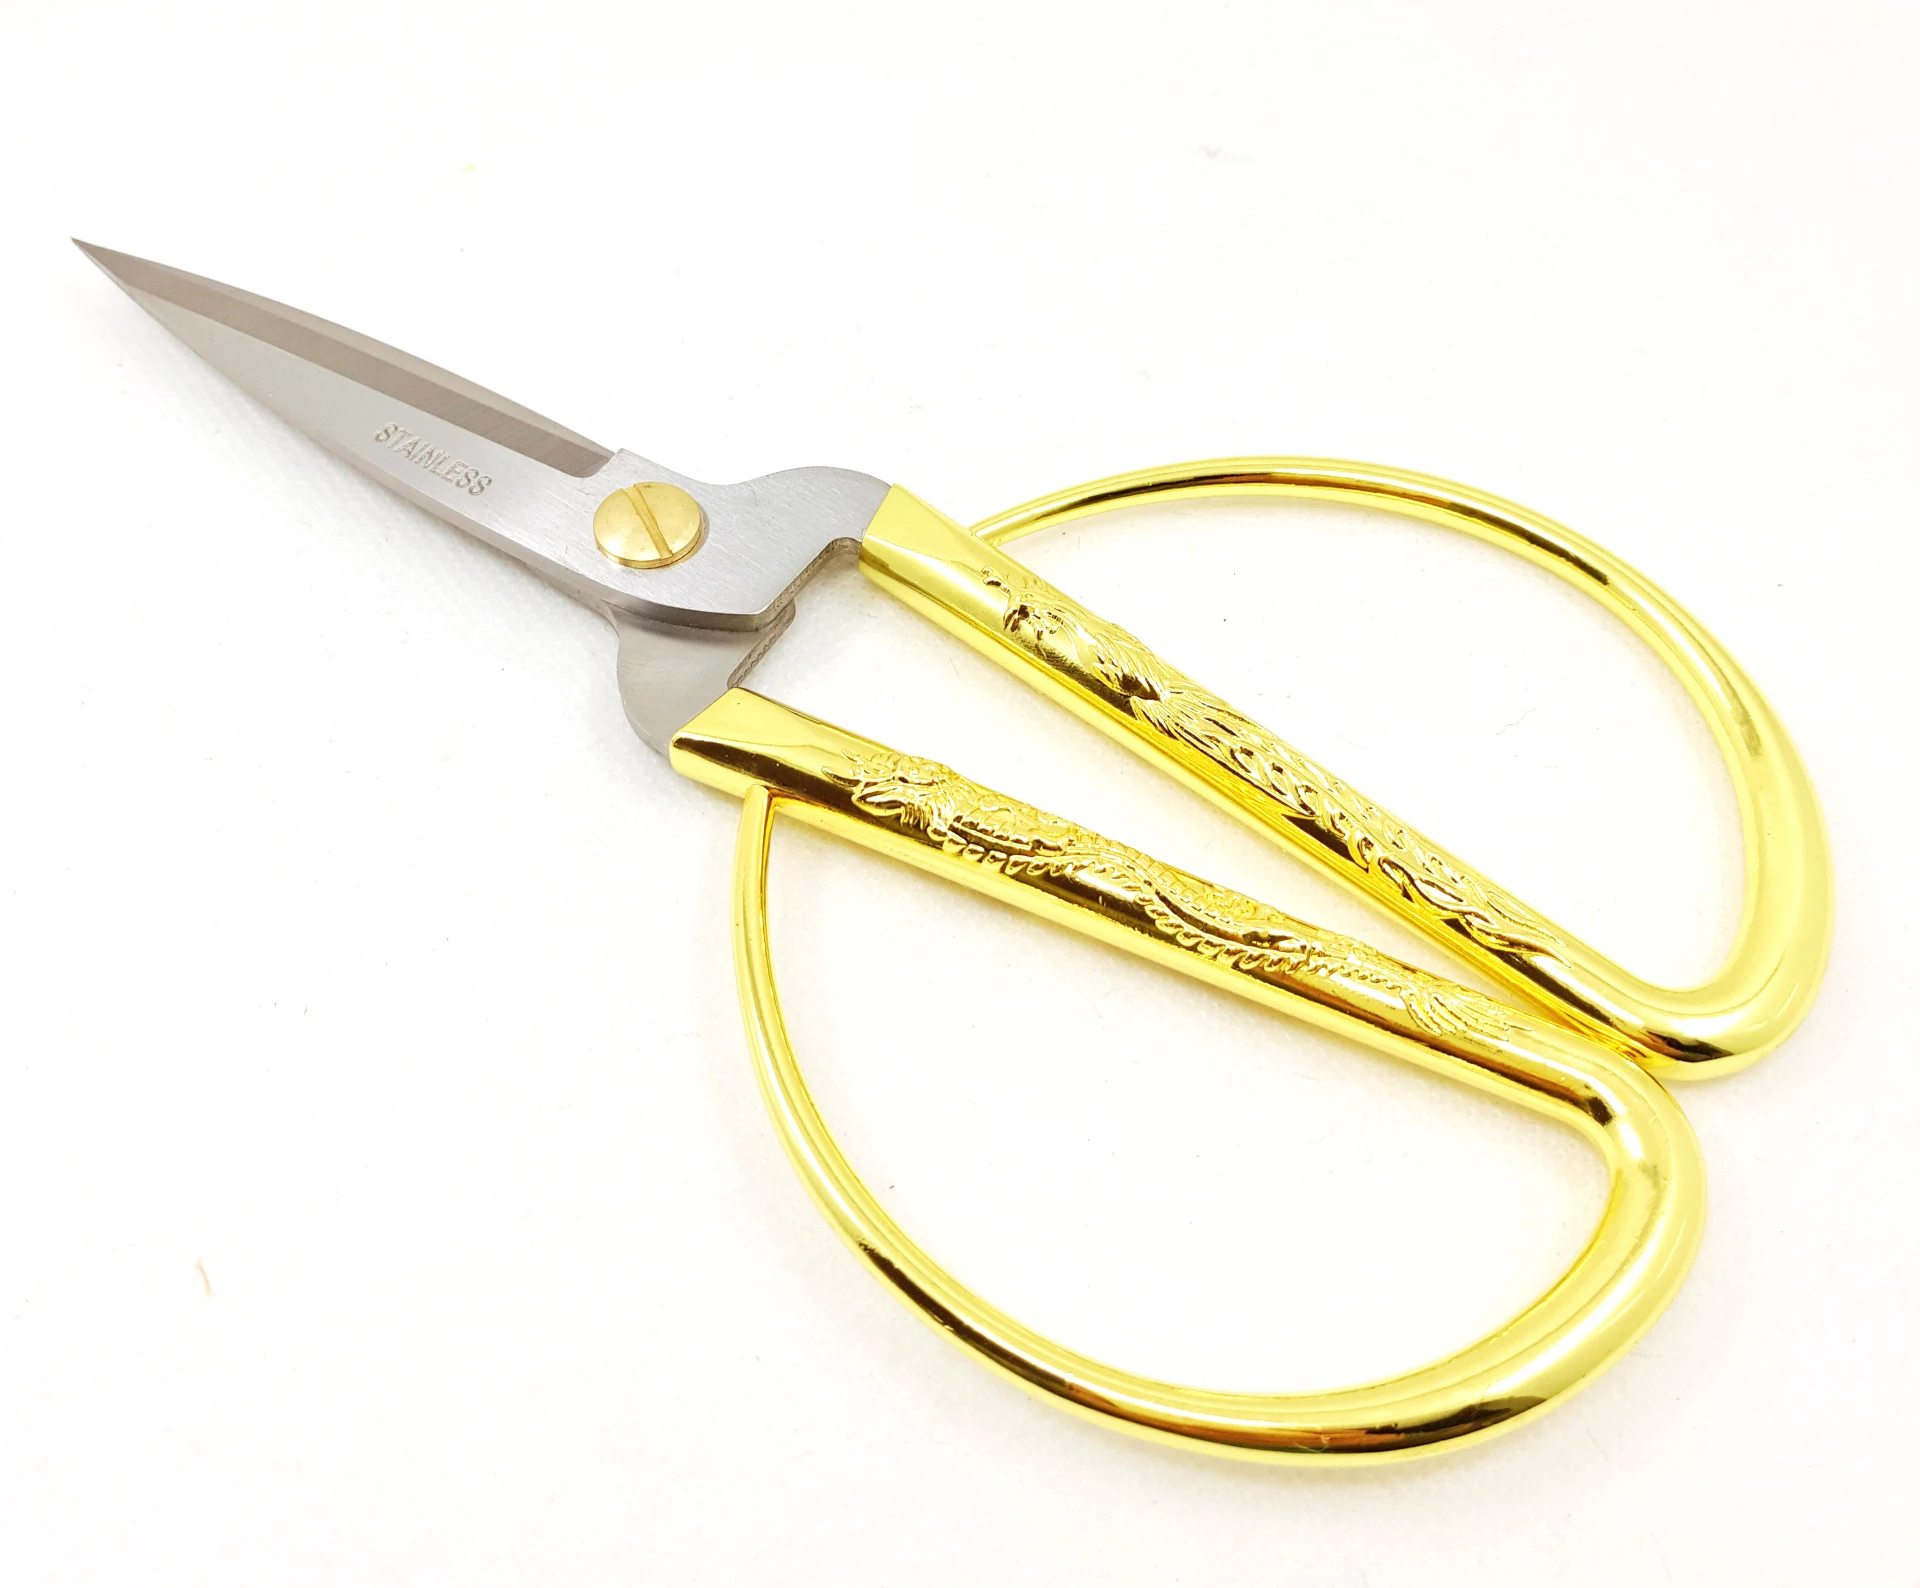 1 шт. золотые портновские ножницы короткий резак Прочные высокие стальные винтажные портные ножницы для ткань домашнего хозяйства